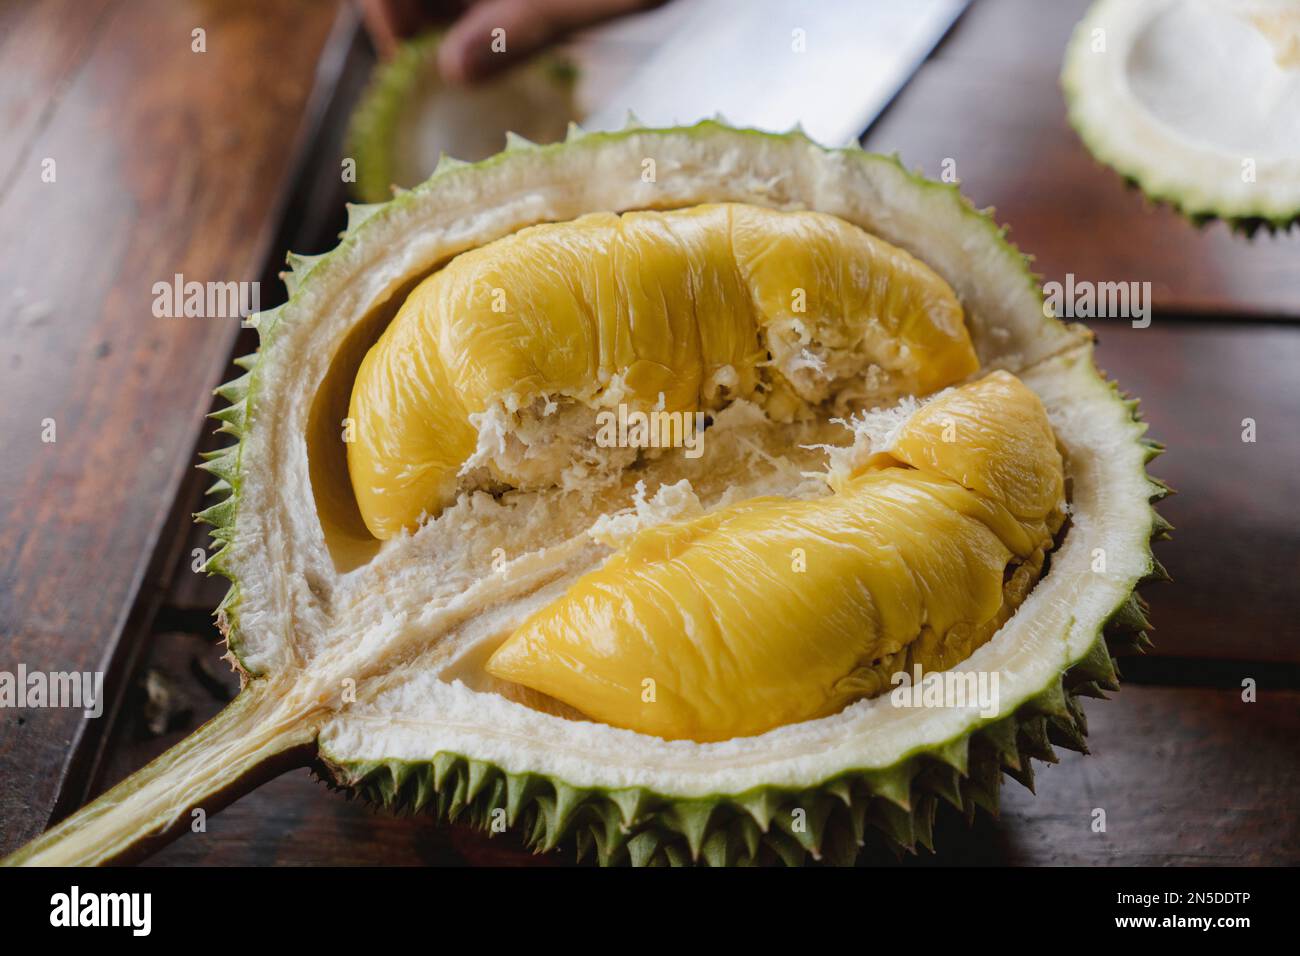 Halb geöffnete Durianfrucht, der König der Früchte, auf einem Tisch. Tropische und exotische Früchte aus Malaysia, Südostasien. Musang King-Variante. Stockfoto